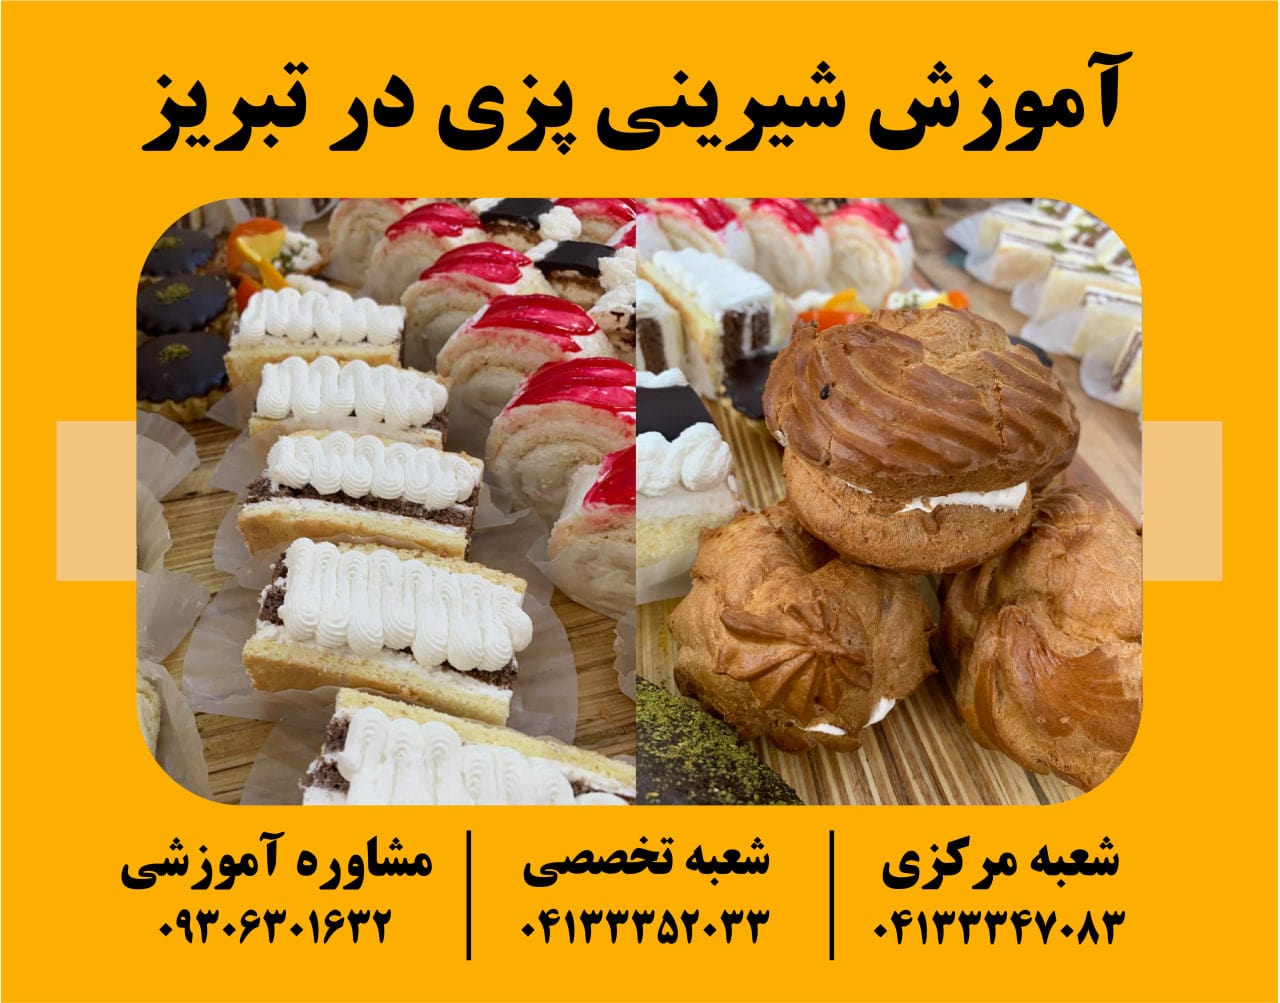 آموزش شیرینی پزی در تبریز